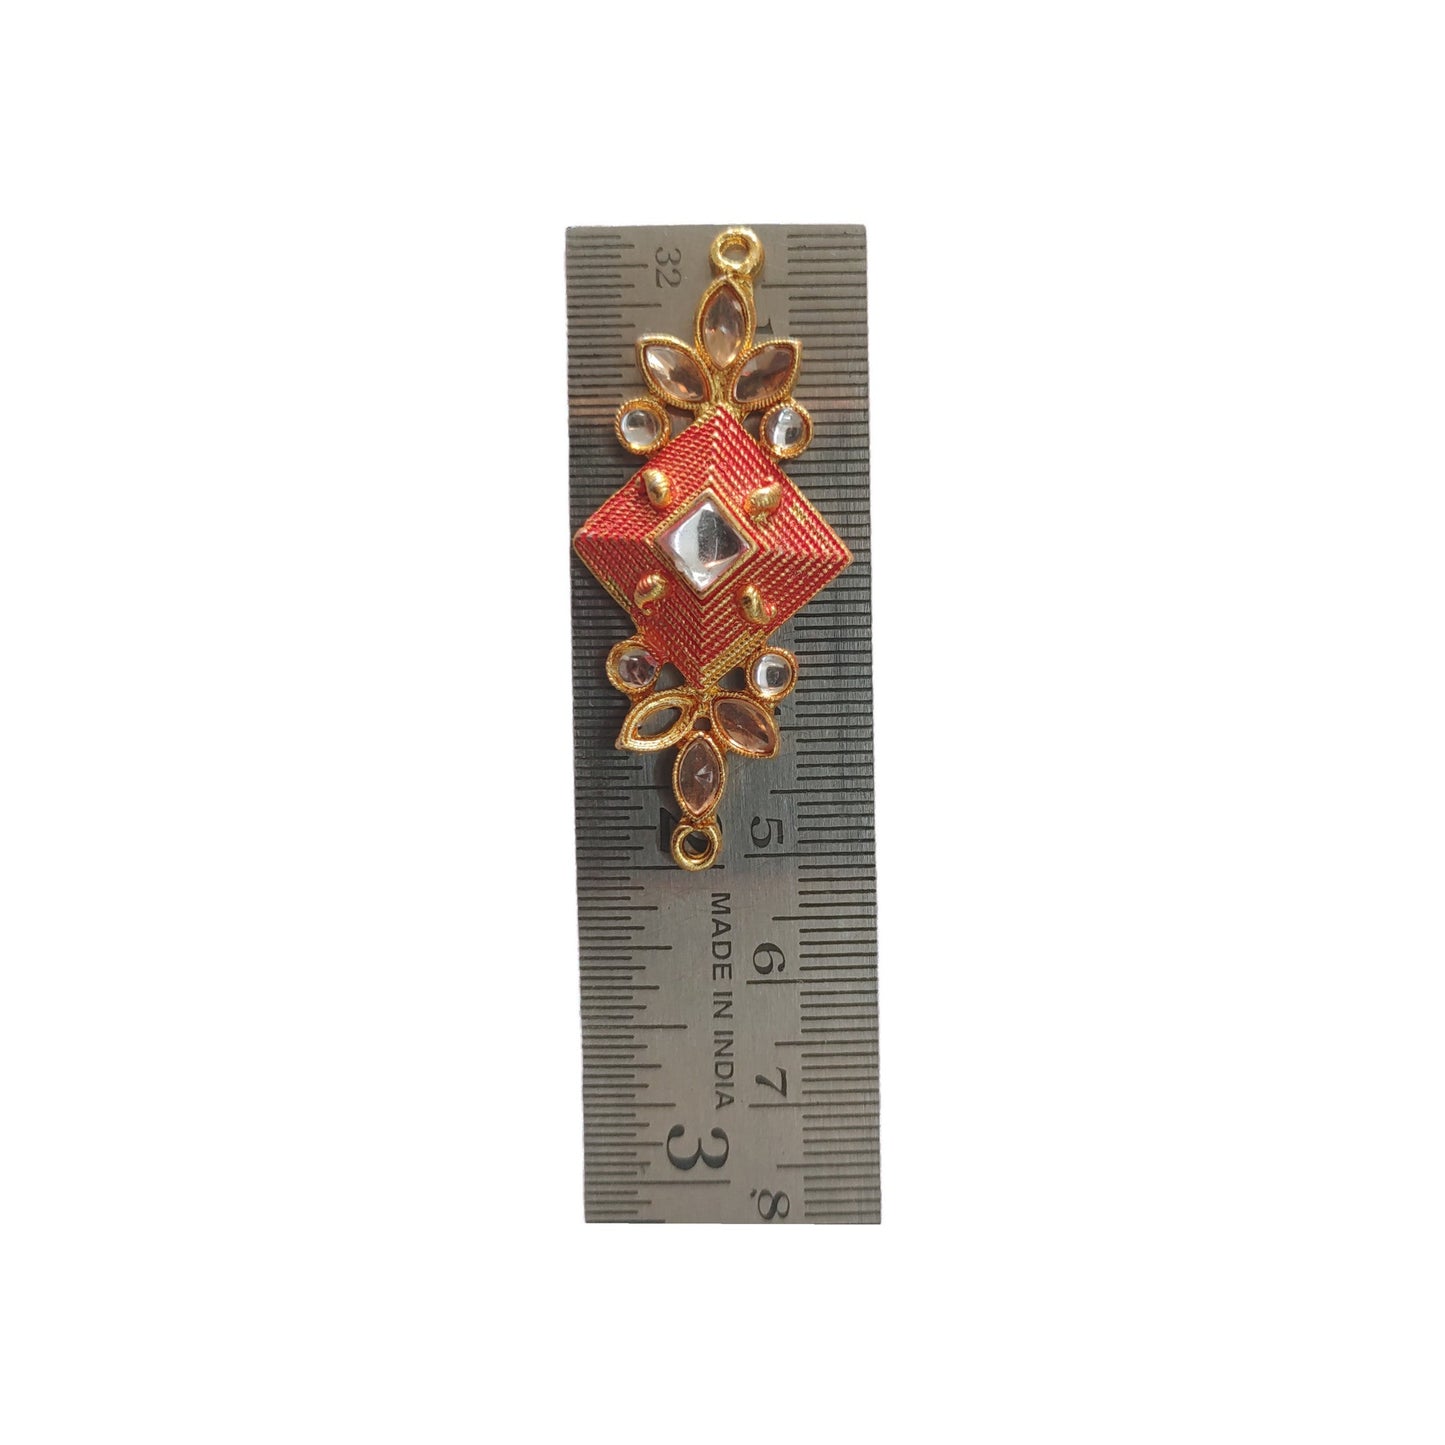 Indian Petals Traditional Kalash Style Metal Mazak Motif for Rakhi, Jewelry designing and Craft Making or Decor